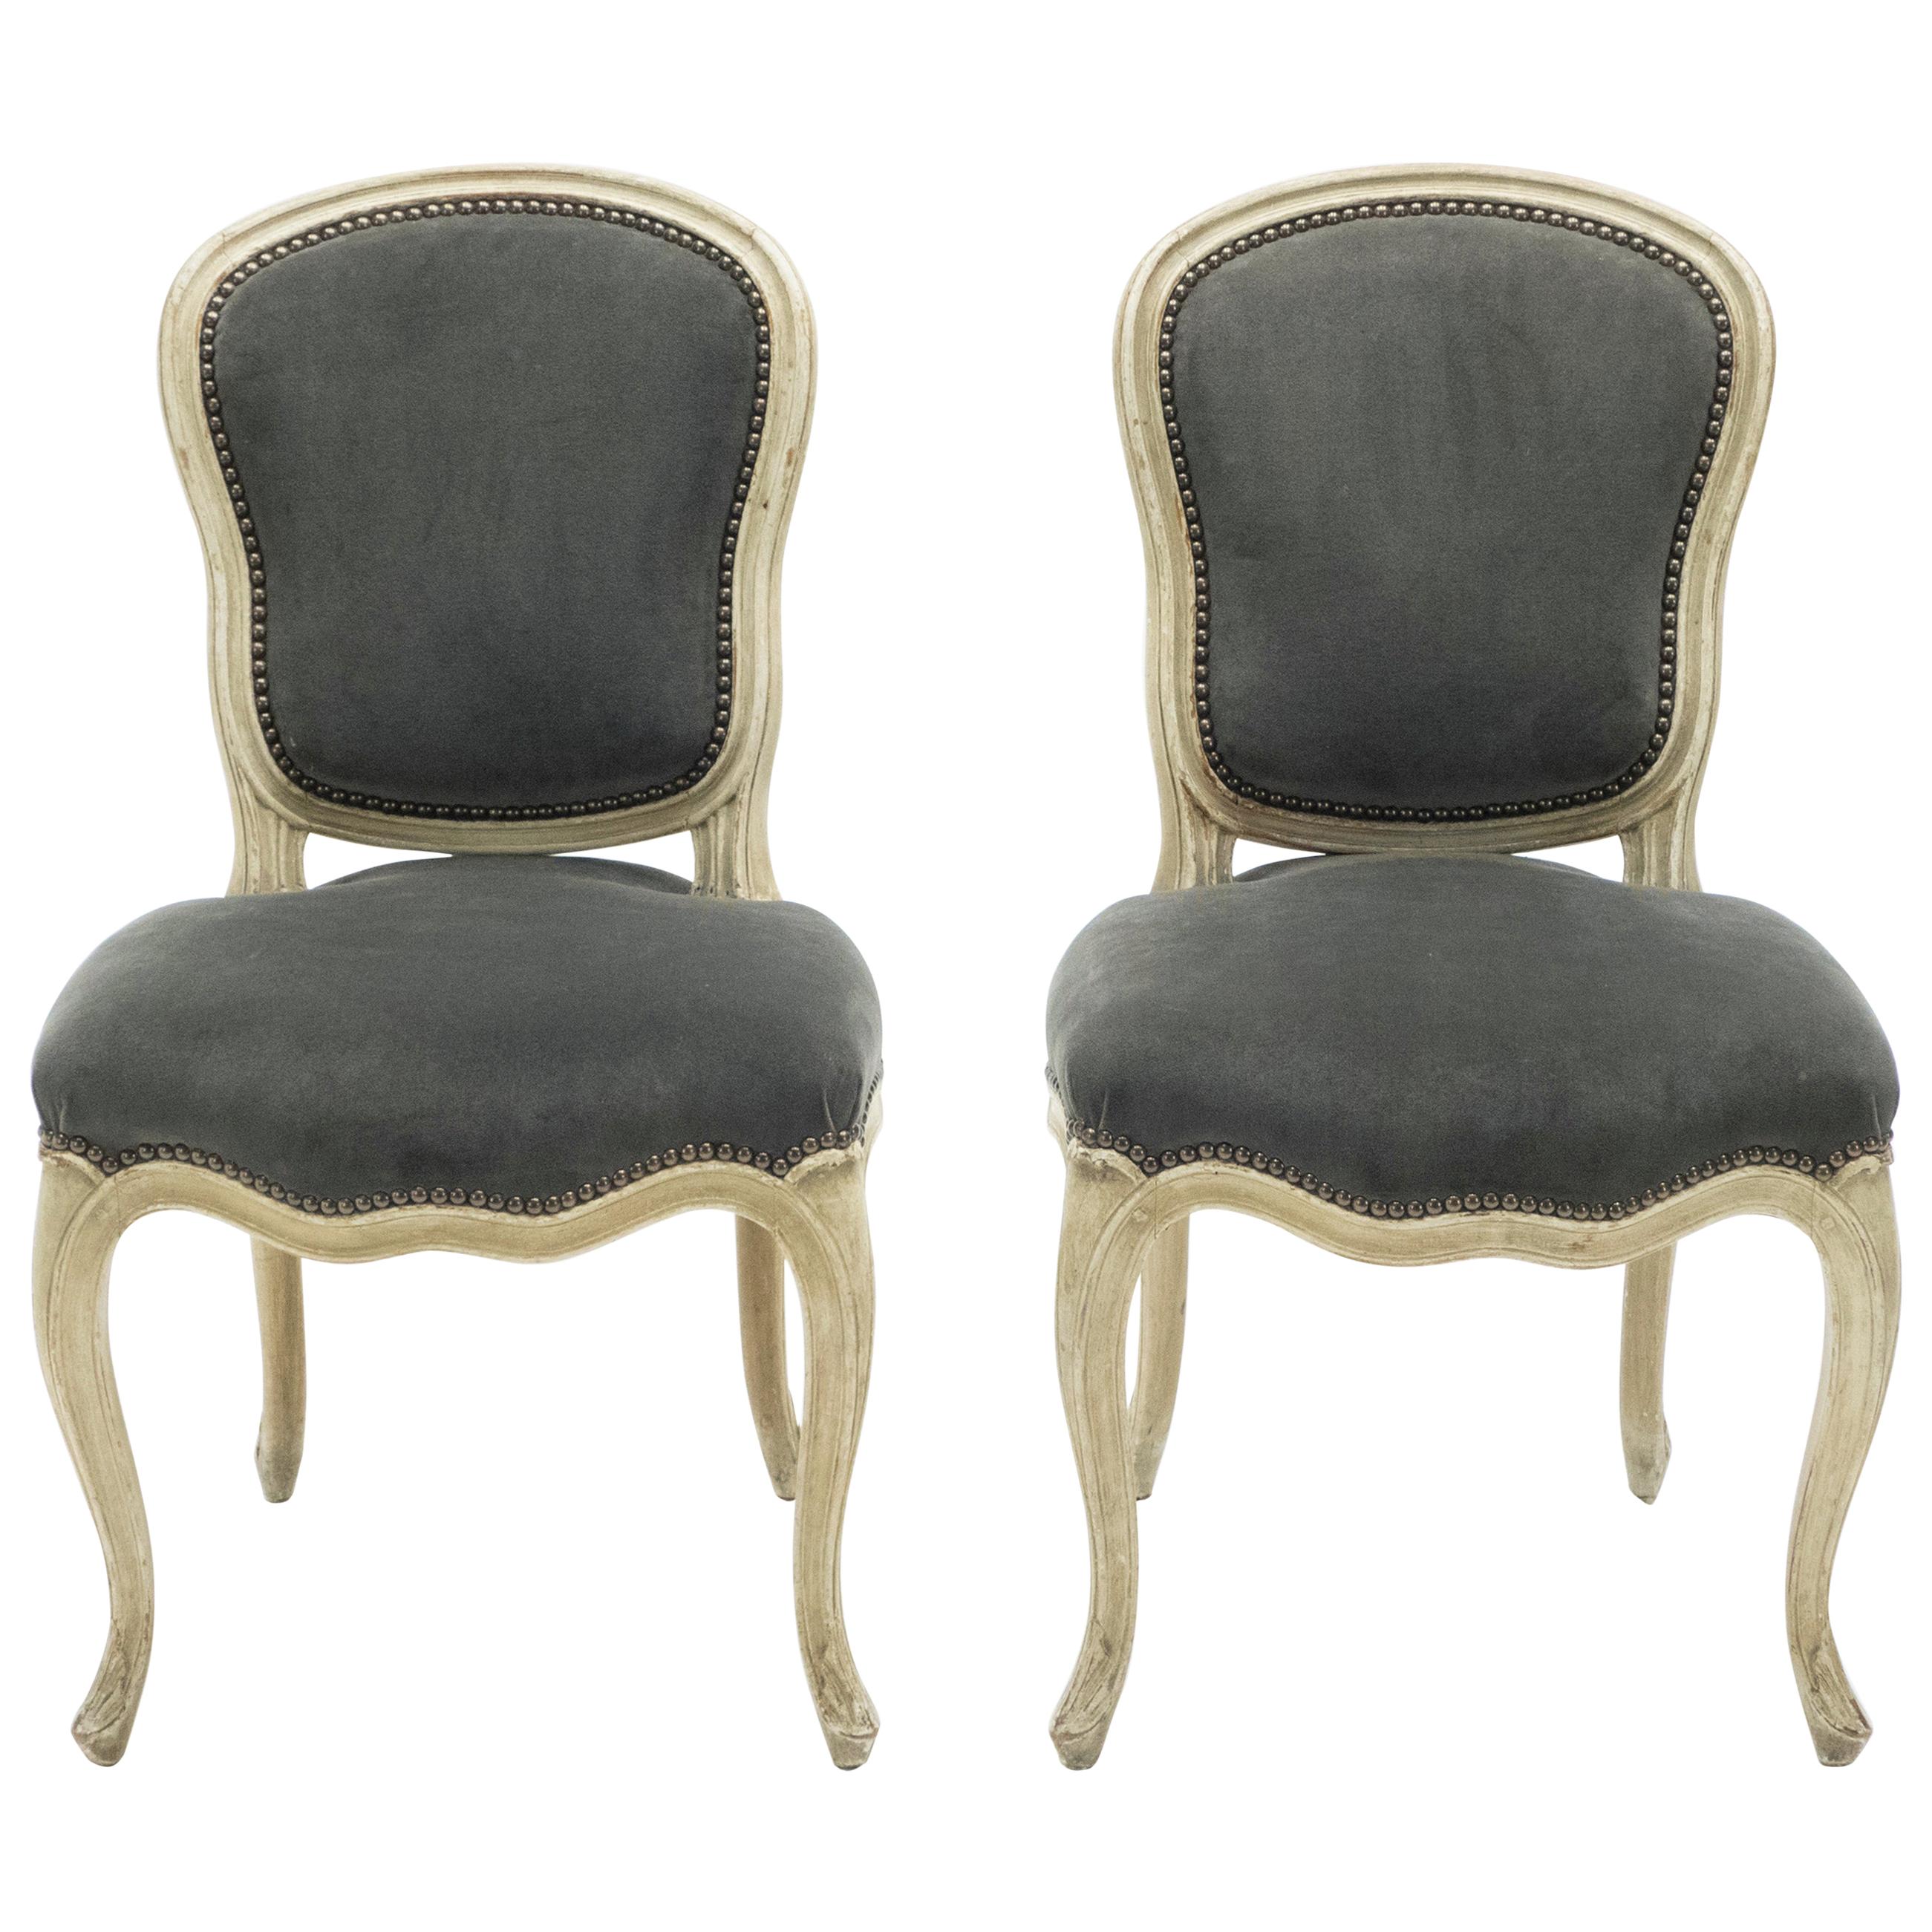 Seltenes Paar gestempelter neoklassizistischer Maison Jansen-Stühle im Louis-XV-Stil, 1940er Jahre